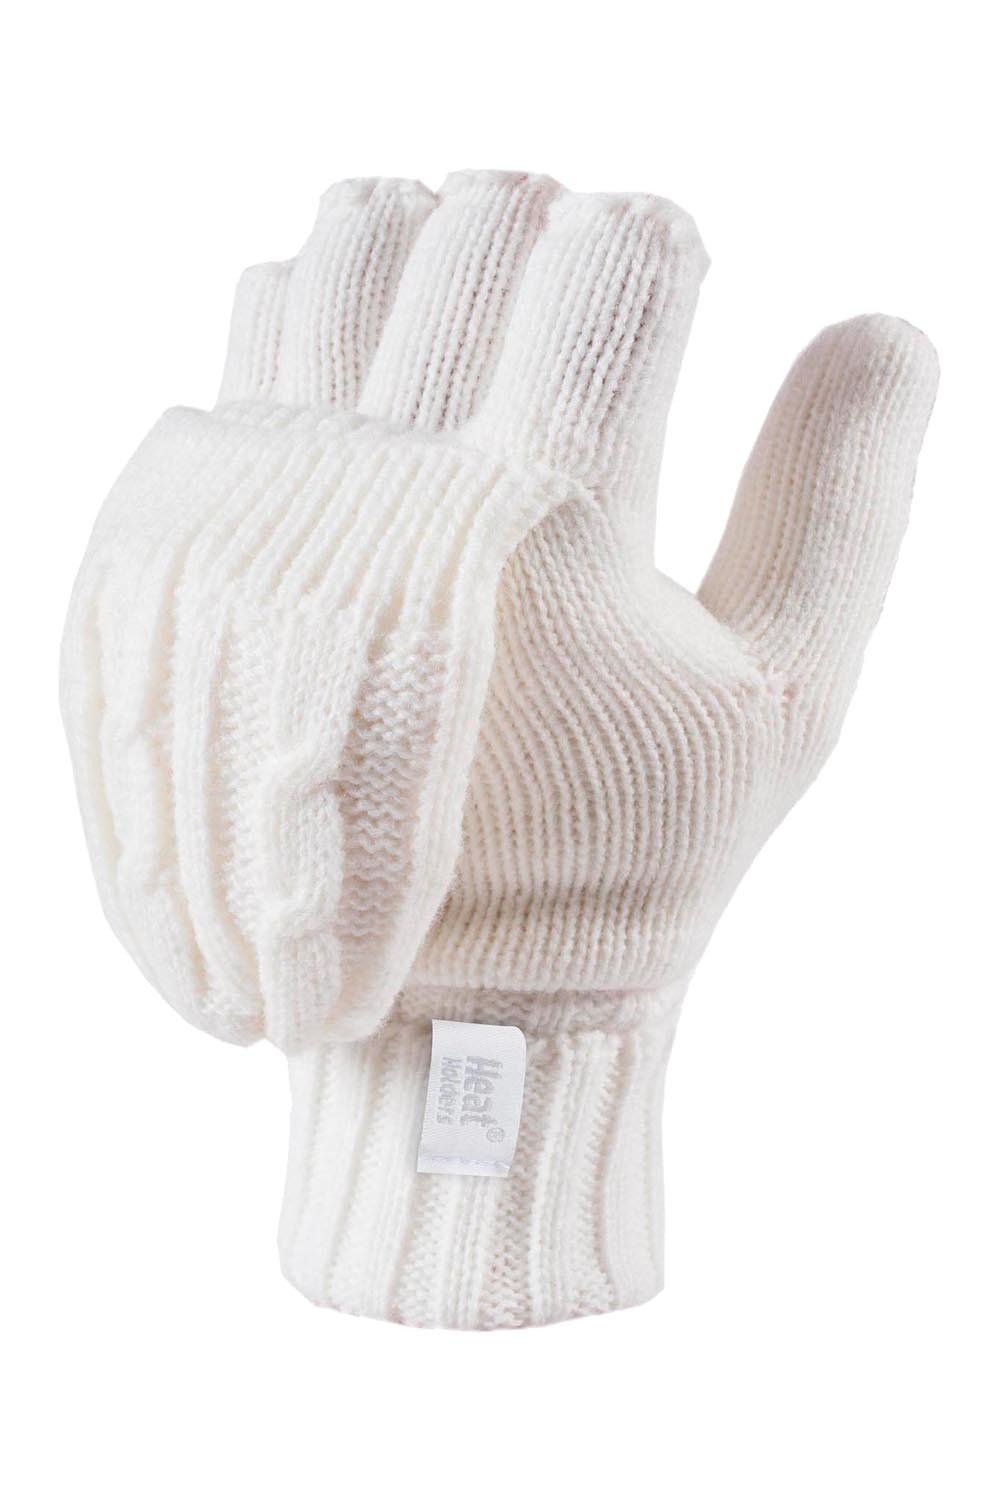 Womens Knit Thermal Fingerless Converter Gloves -